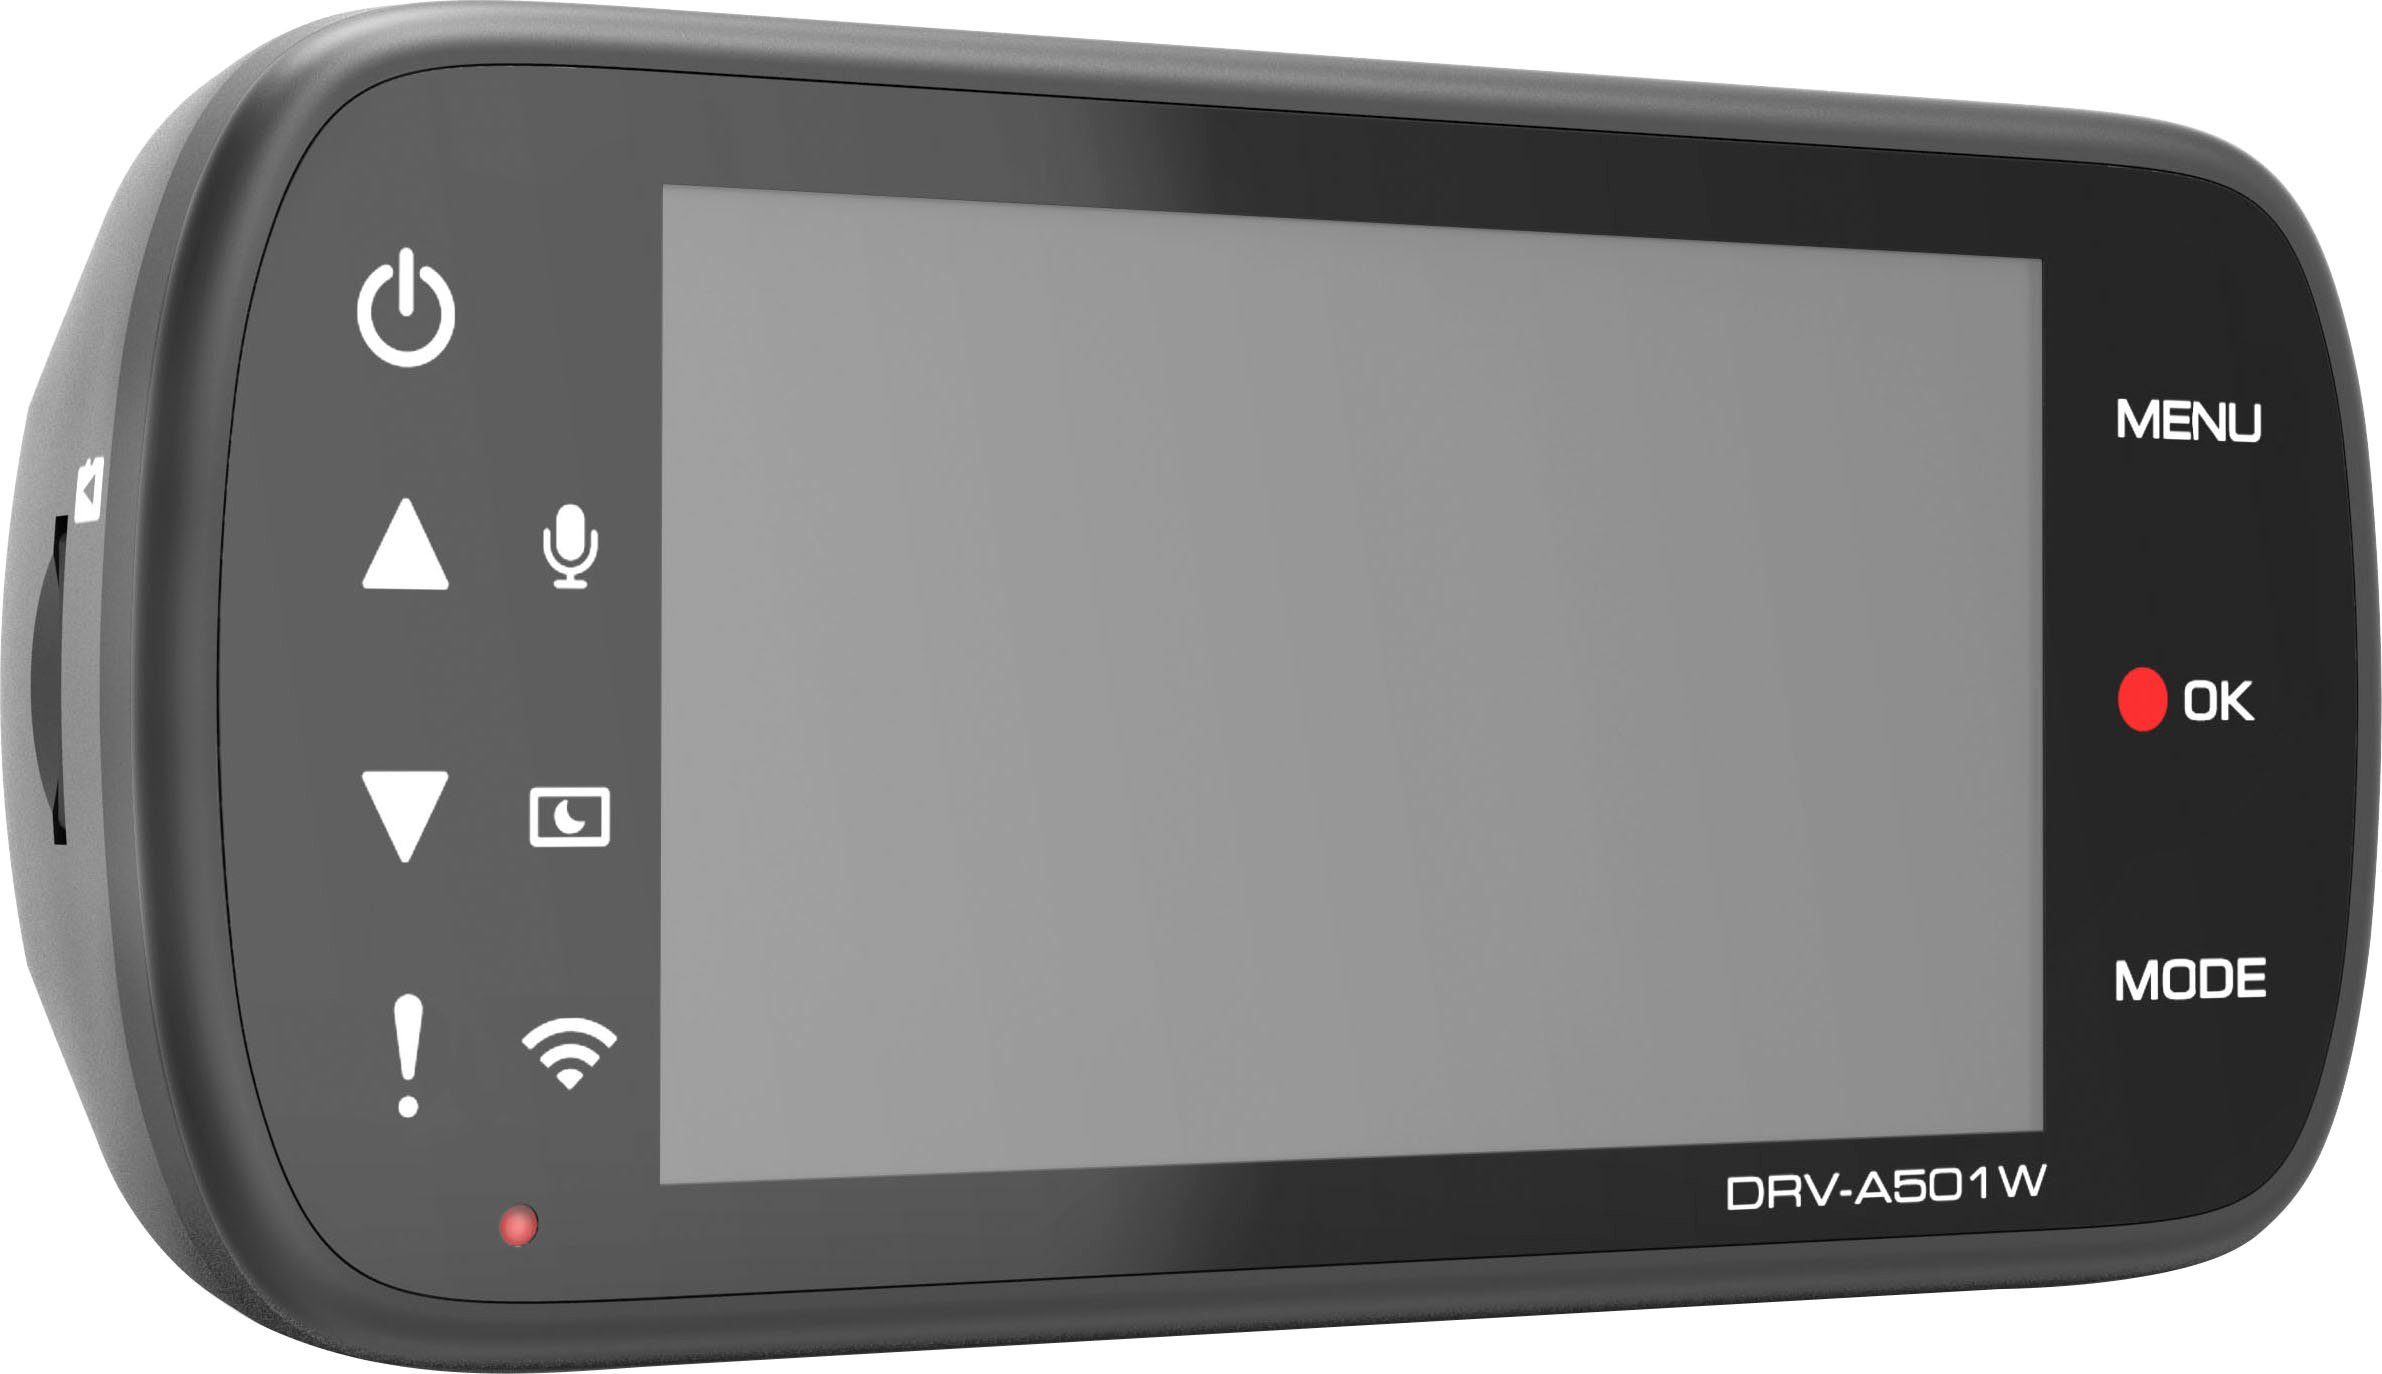 Kenwood Dashcam WLAN (Wi-Fi) DRV-A501W (WQHD,